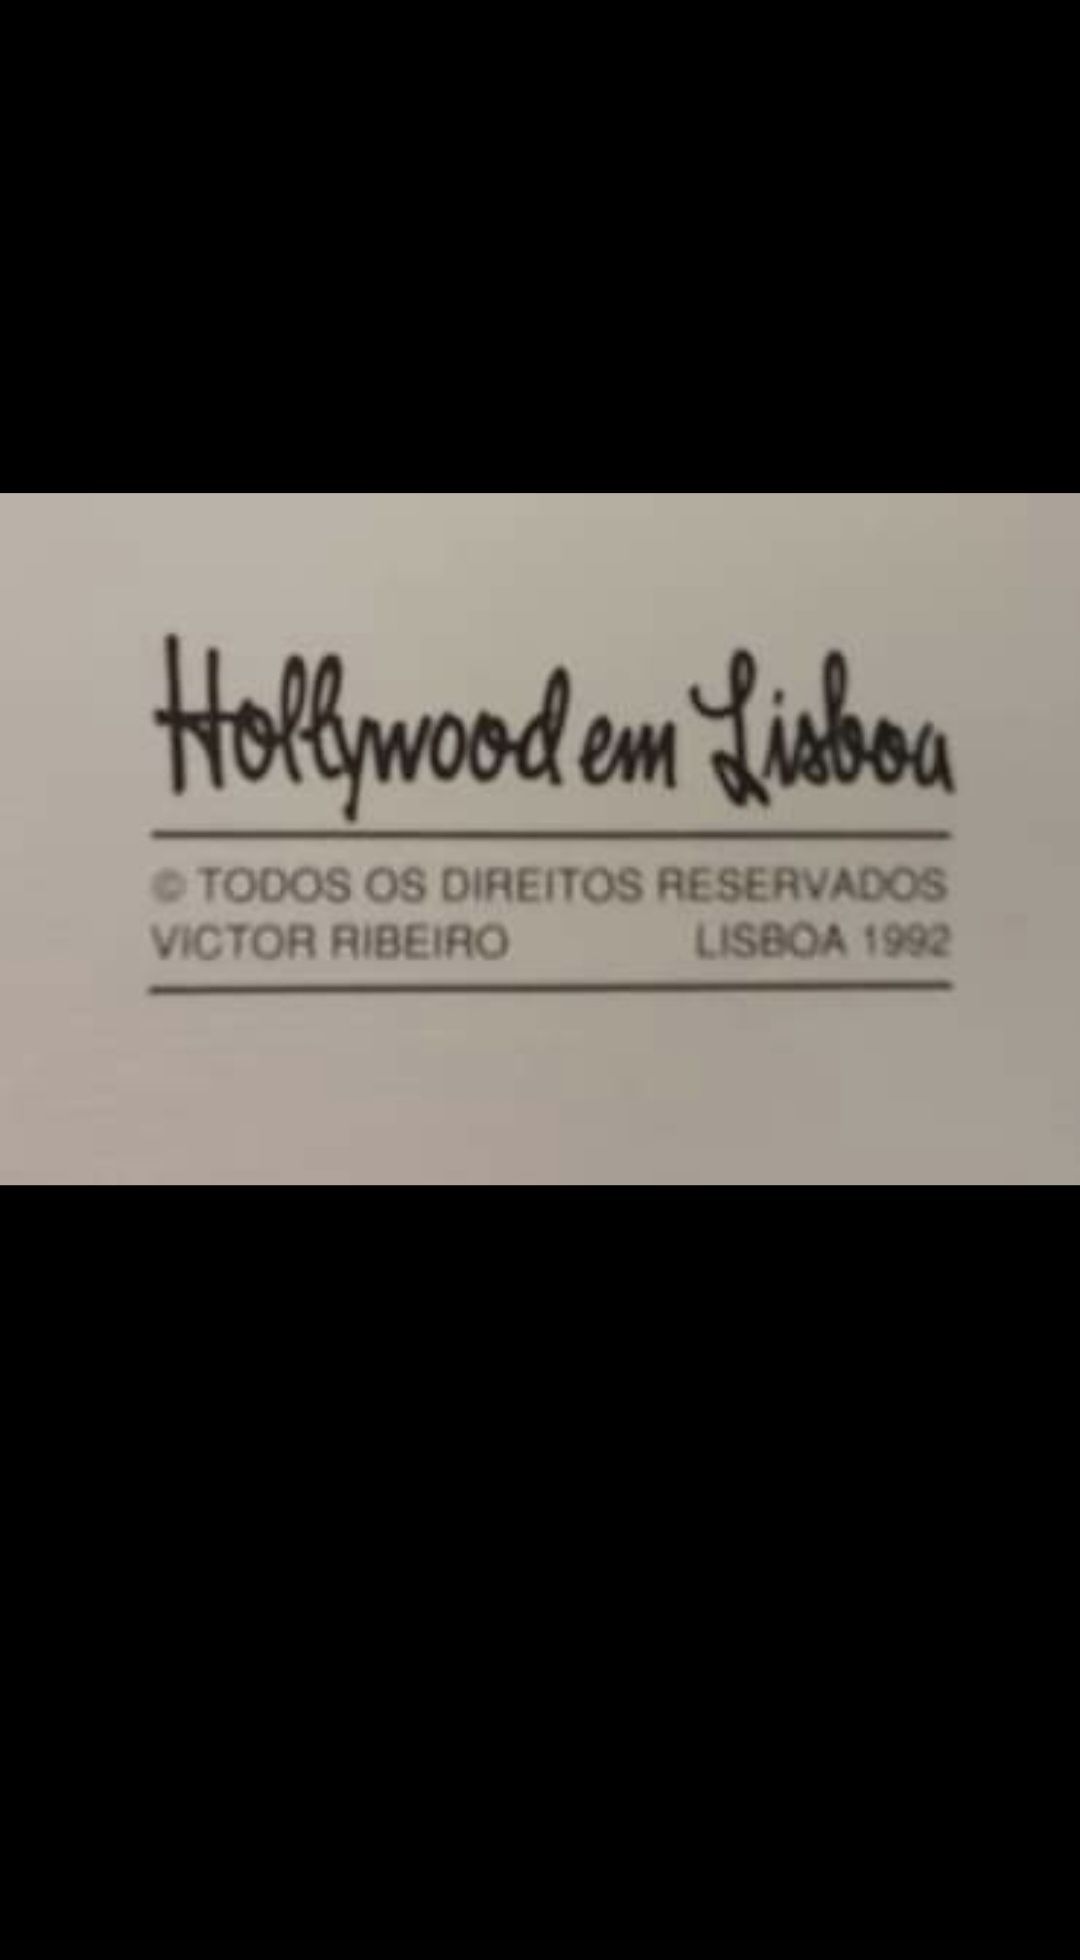 Gravura original de Victor Ribeiro da série "Hollywood em Lisboa"